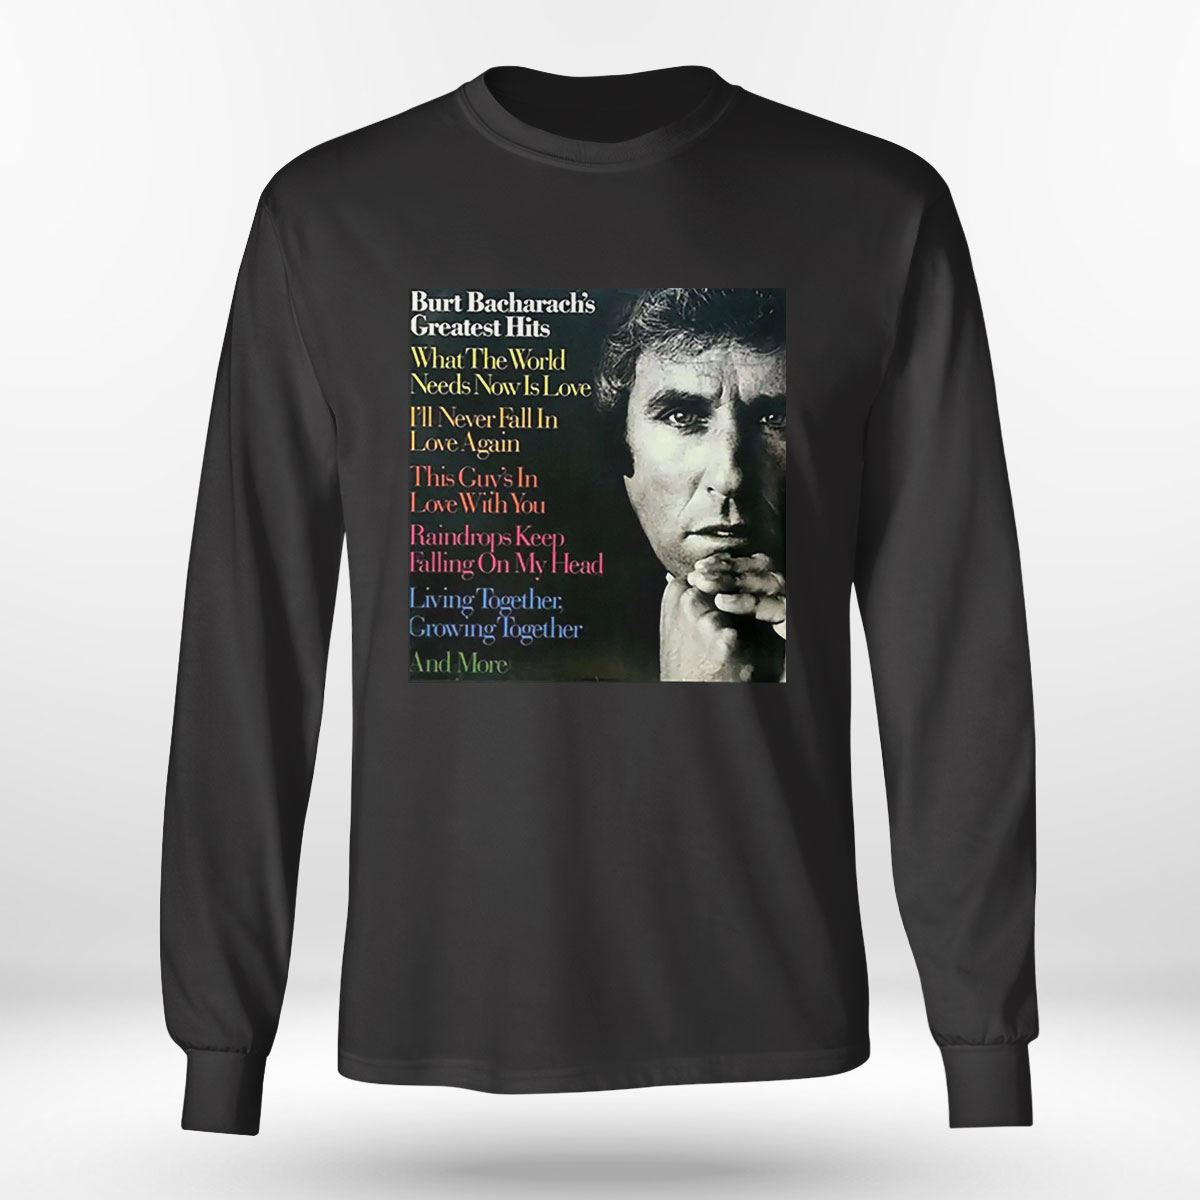 What The World Needs Now Burt Bacharach Shirt, Ladies Tee